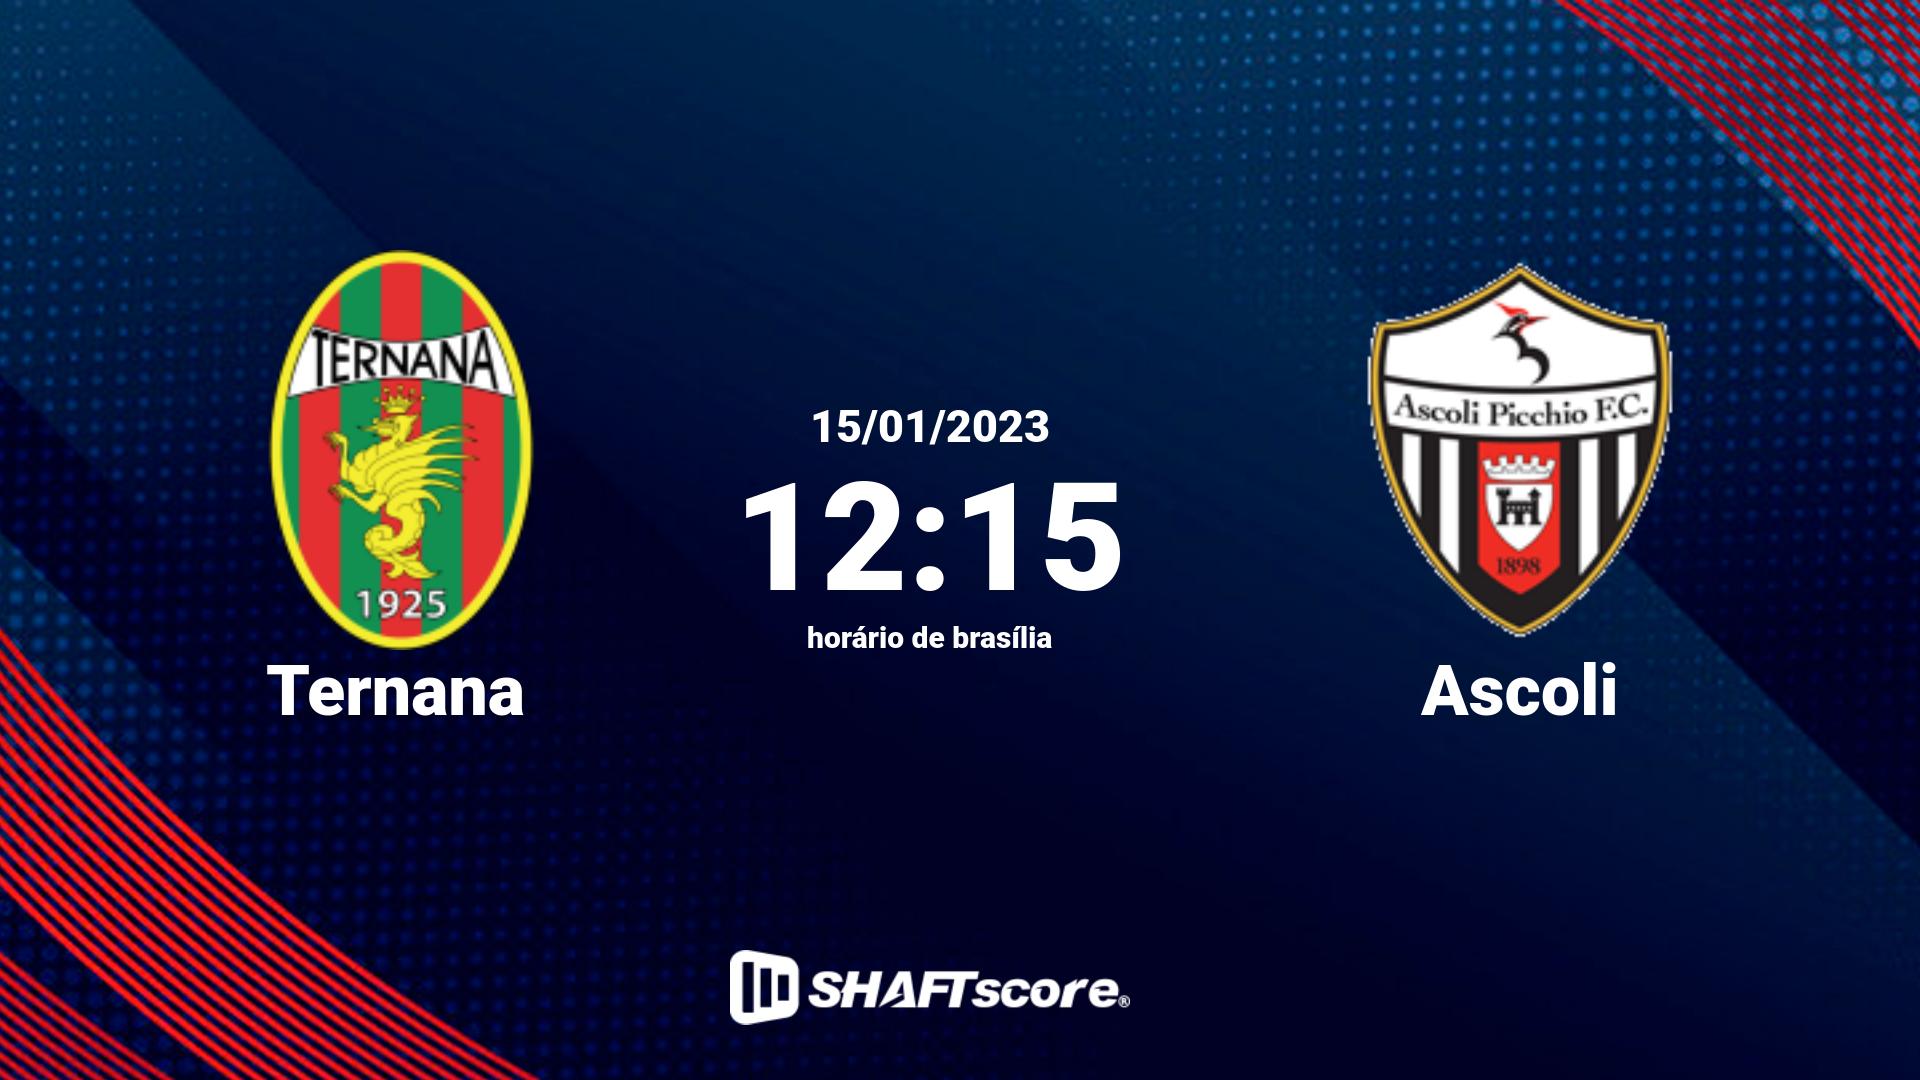 Estatísticas do jogo Ternana vs Ascoli 15.01 12:15